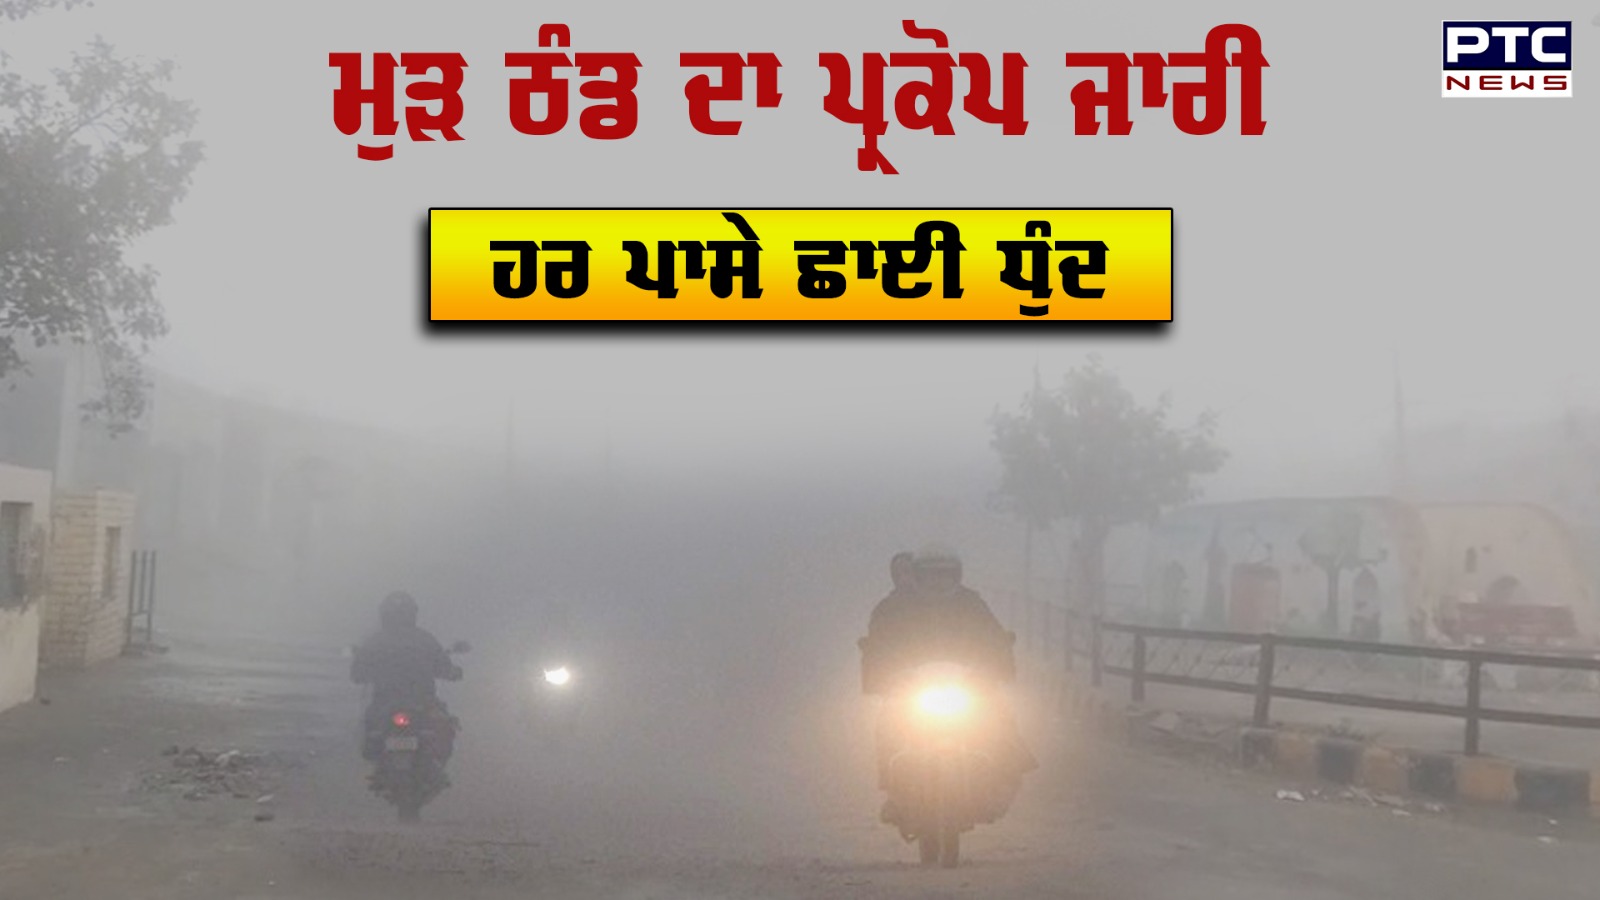 Punjab Weather Update: ਮੁੜ ਠੰਡ ਦਾ ਪ੍ਰਕੋਪ ਜਾਰੀ , ਹਰ ਪਾਸੇ ਛਾਈ ਧੁੰਦ